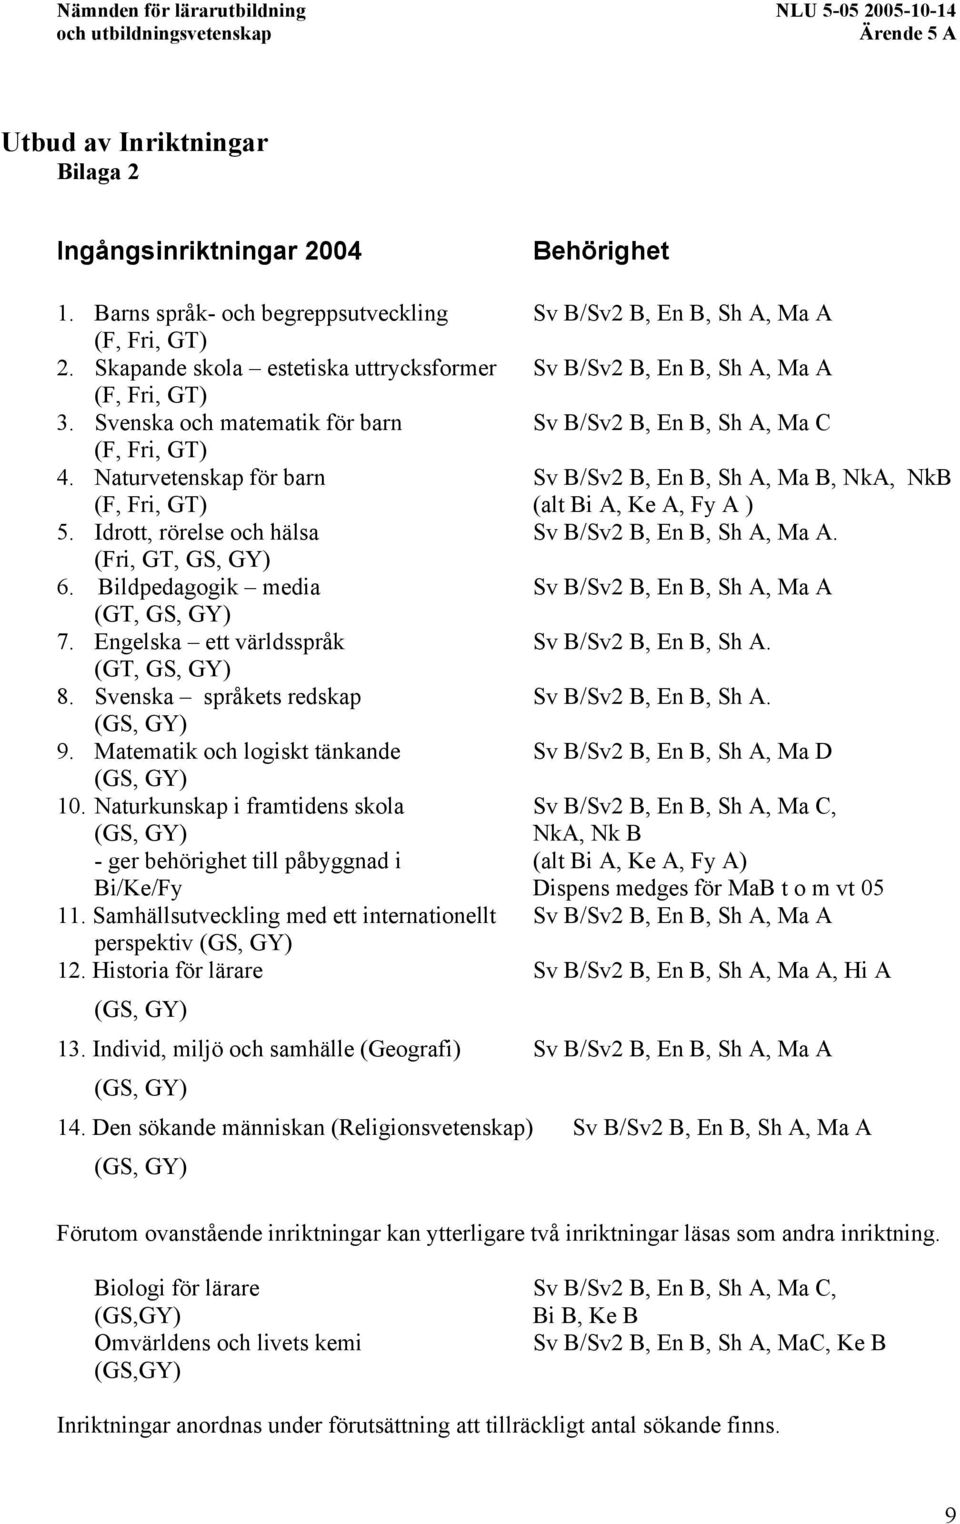 Bildpedagogik media, Ma A (GT, GS, GY) 7. Engelska ett världsspråk. (GT, GS, GY) 8. Svenska språkets redskap. 9. Matematik och logiskt tänkande, Ma D 10.